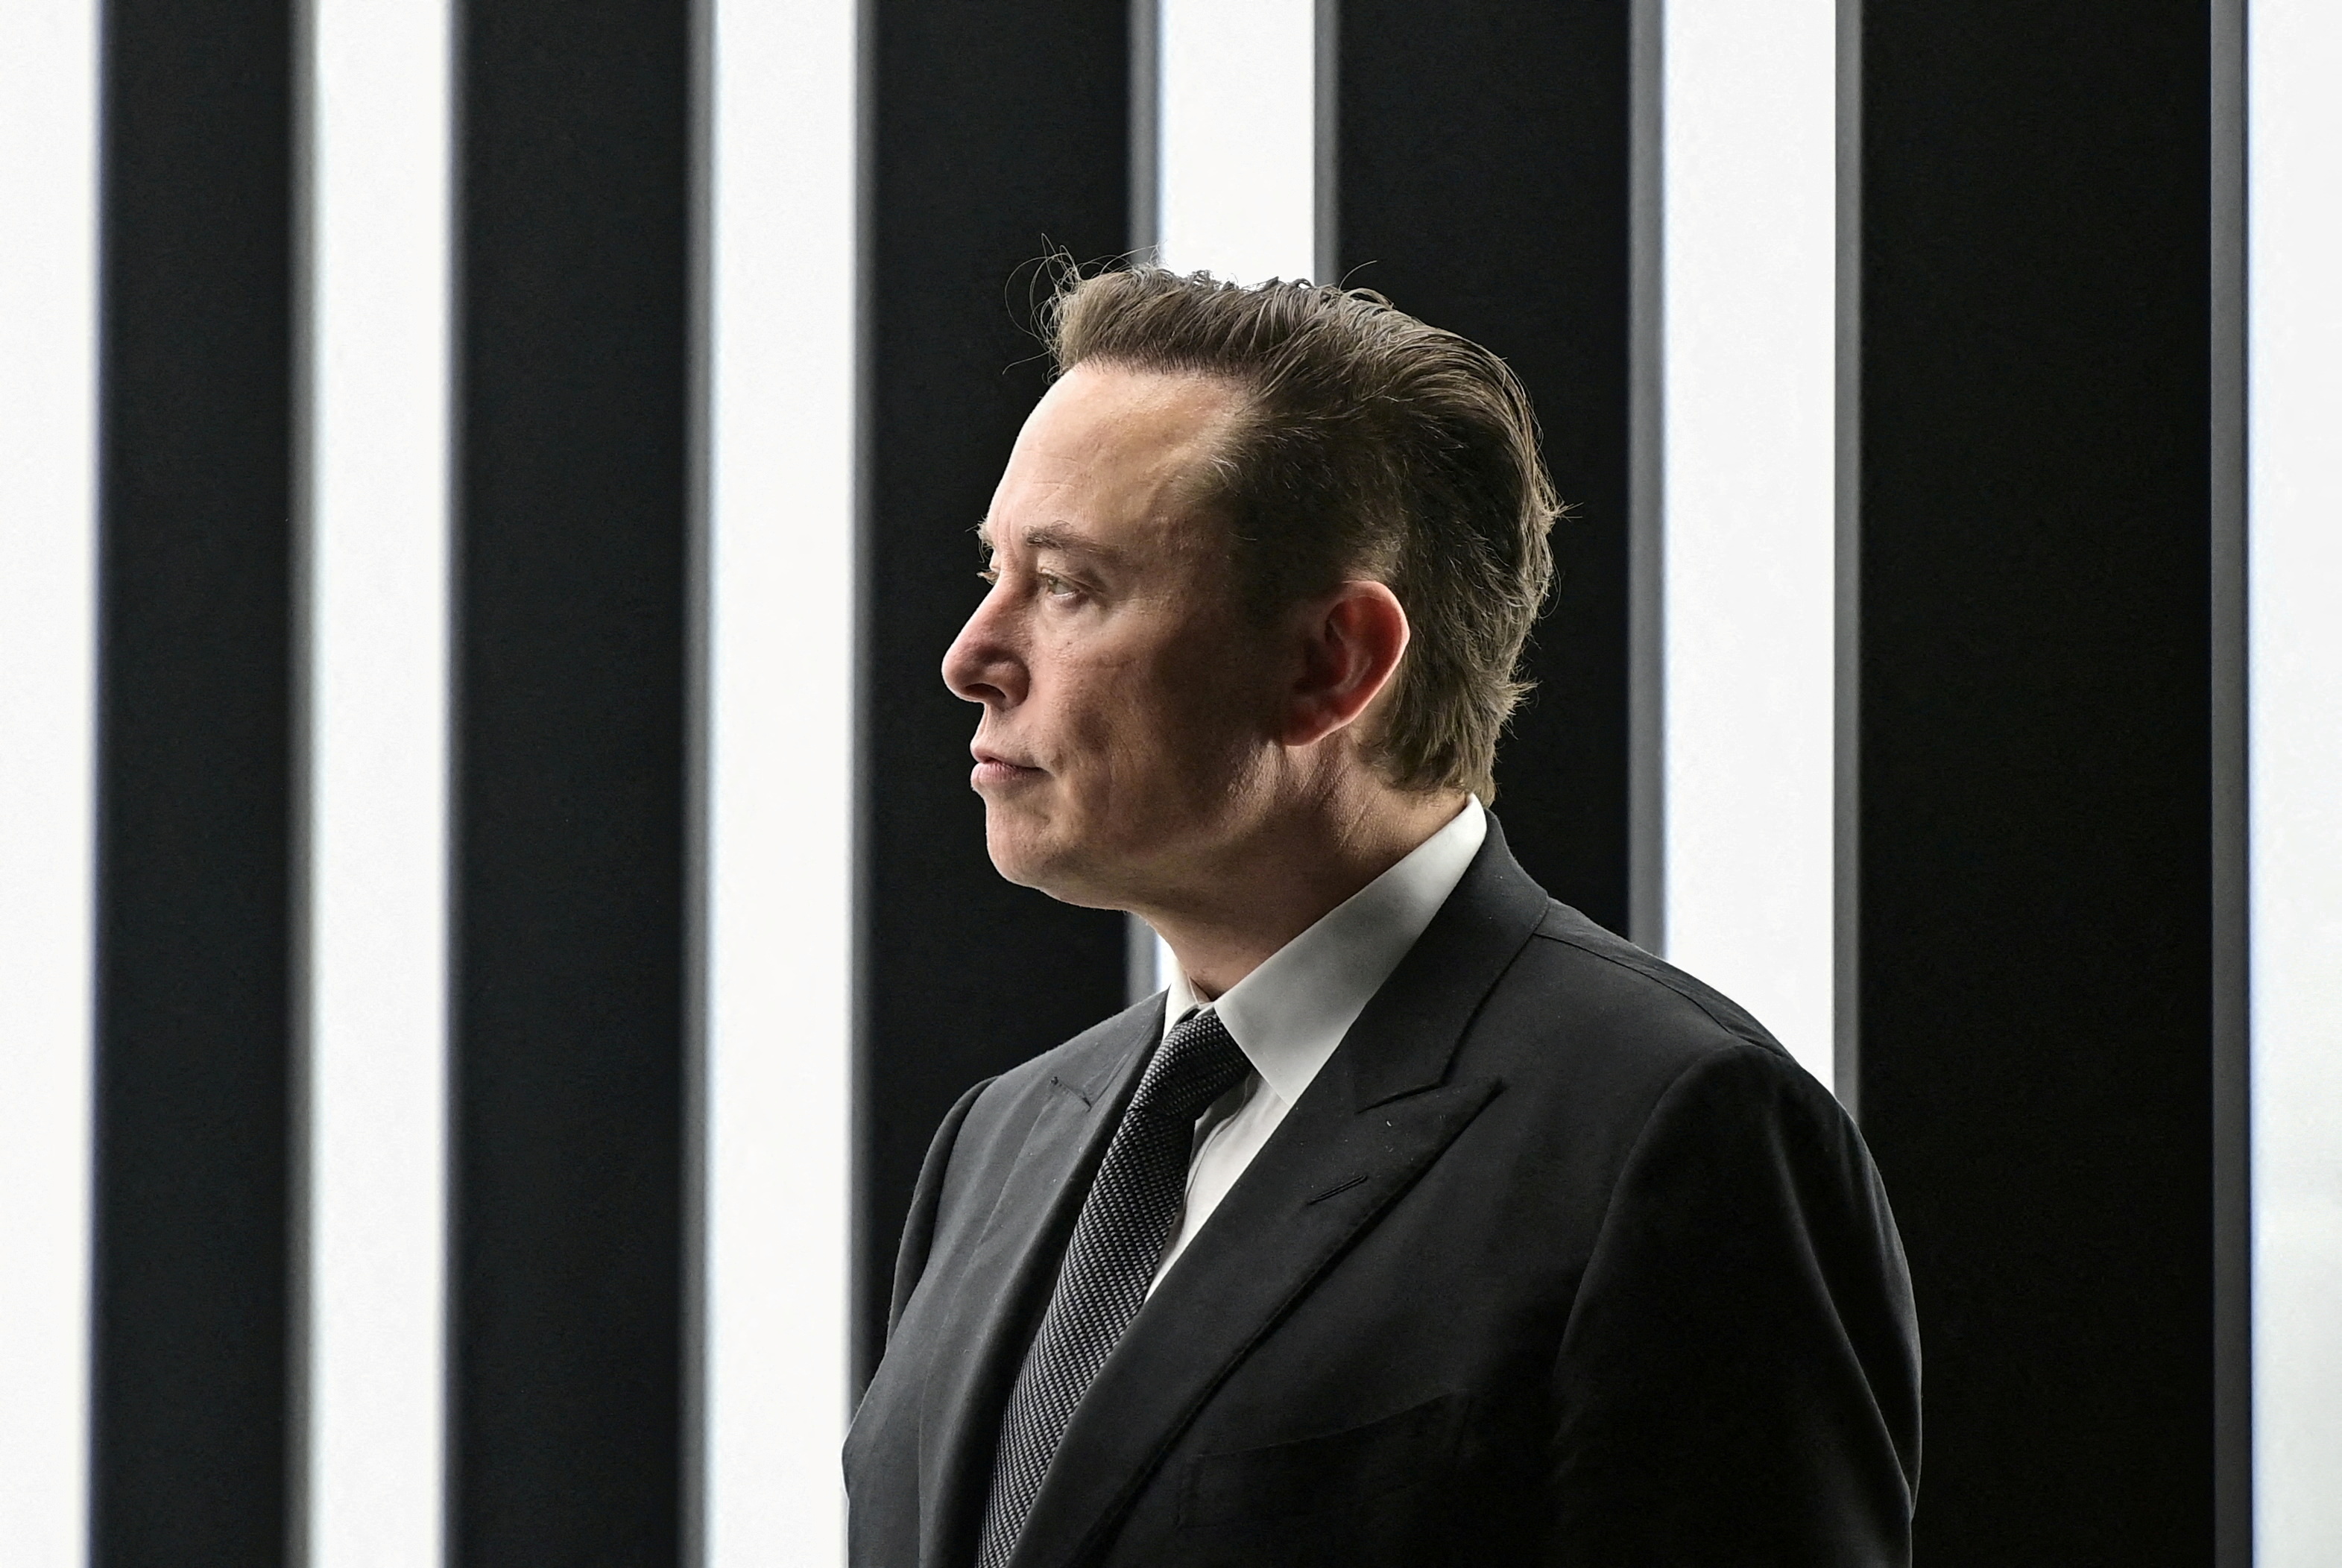 Elon Musk cree que el robot de Tesla podría tener una personalidad (Patrick Pleul/Pool via REUTERS/File Photo)